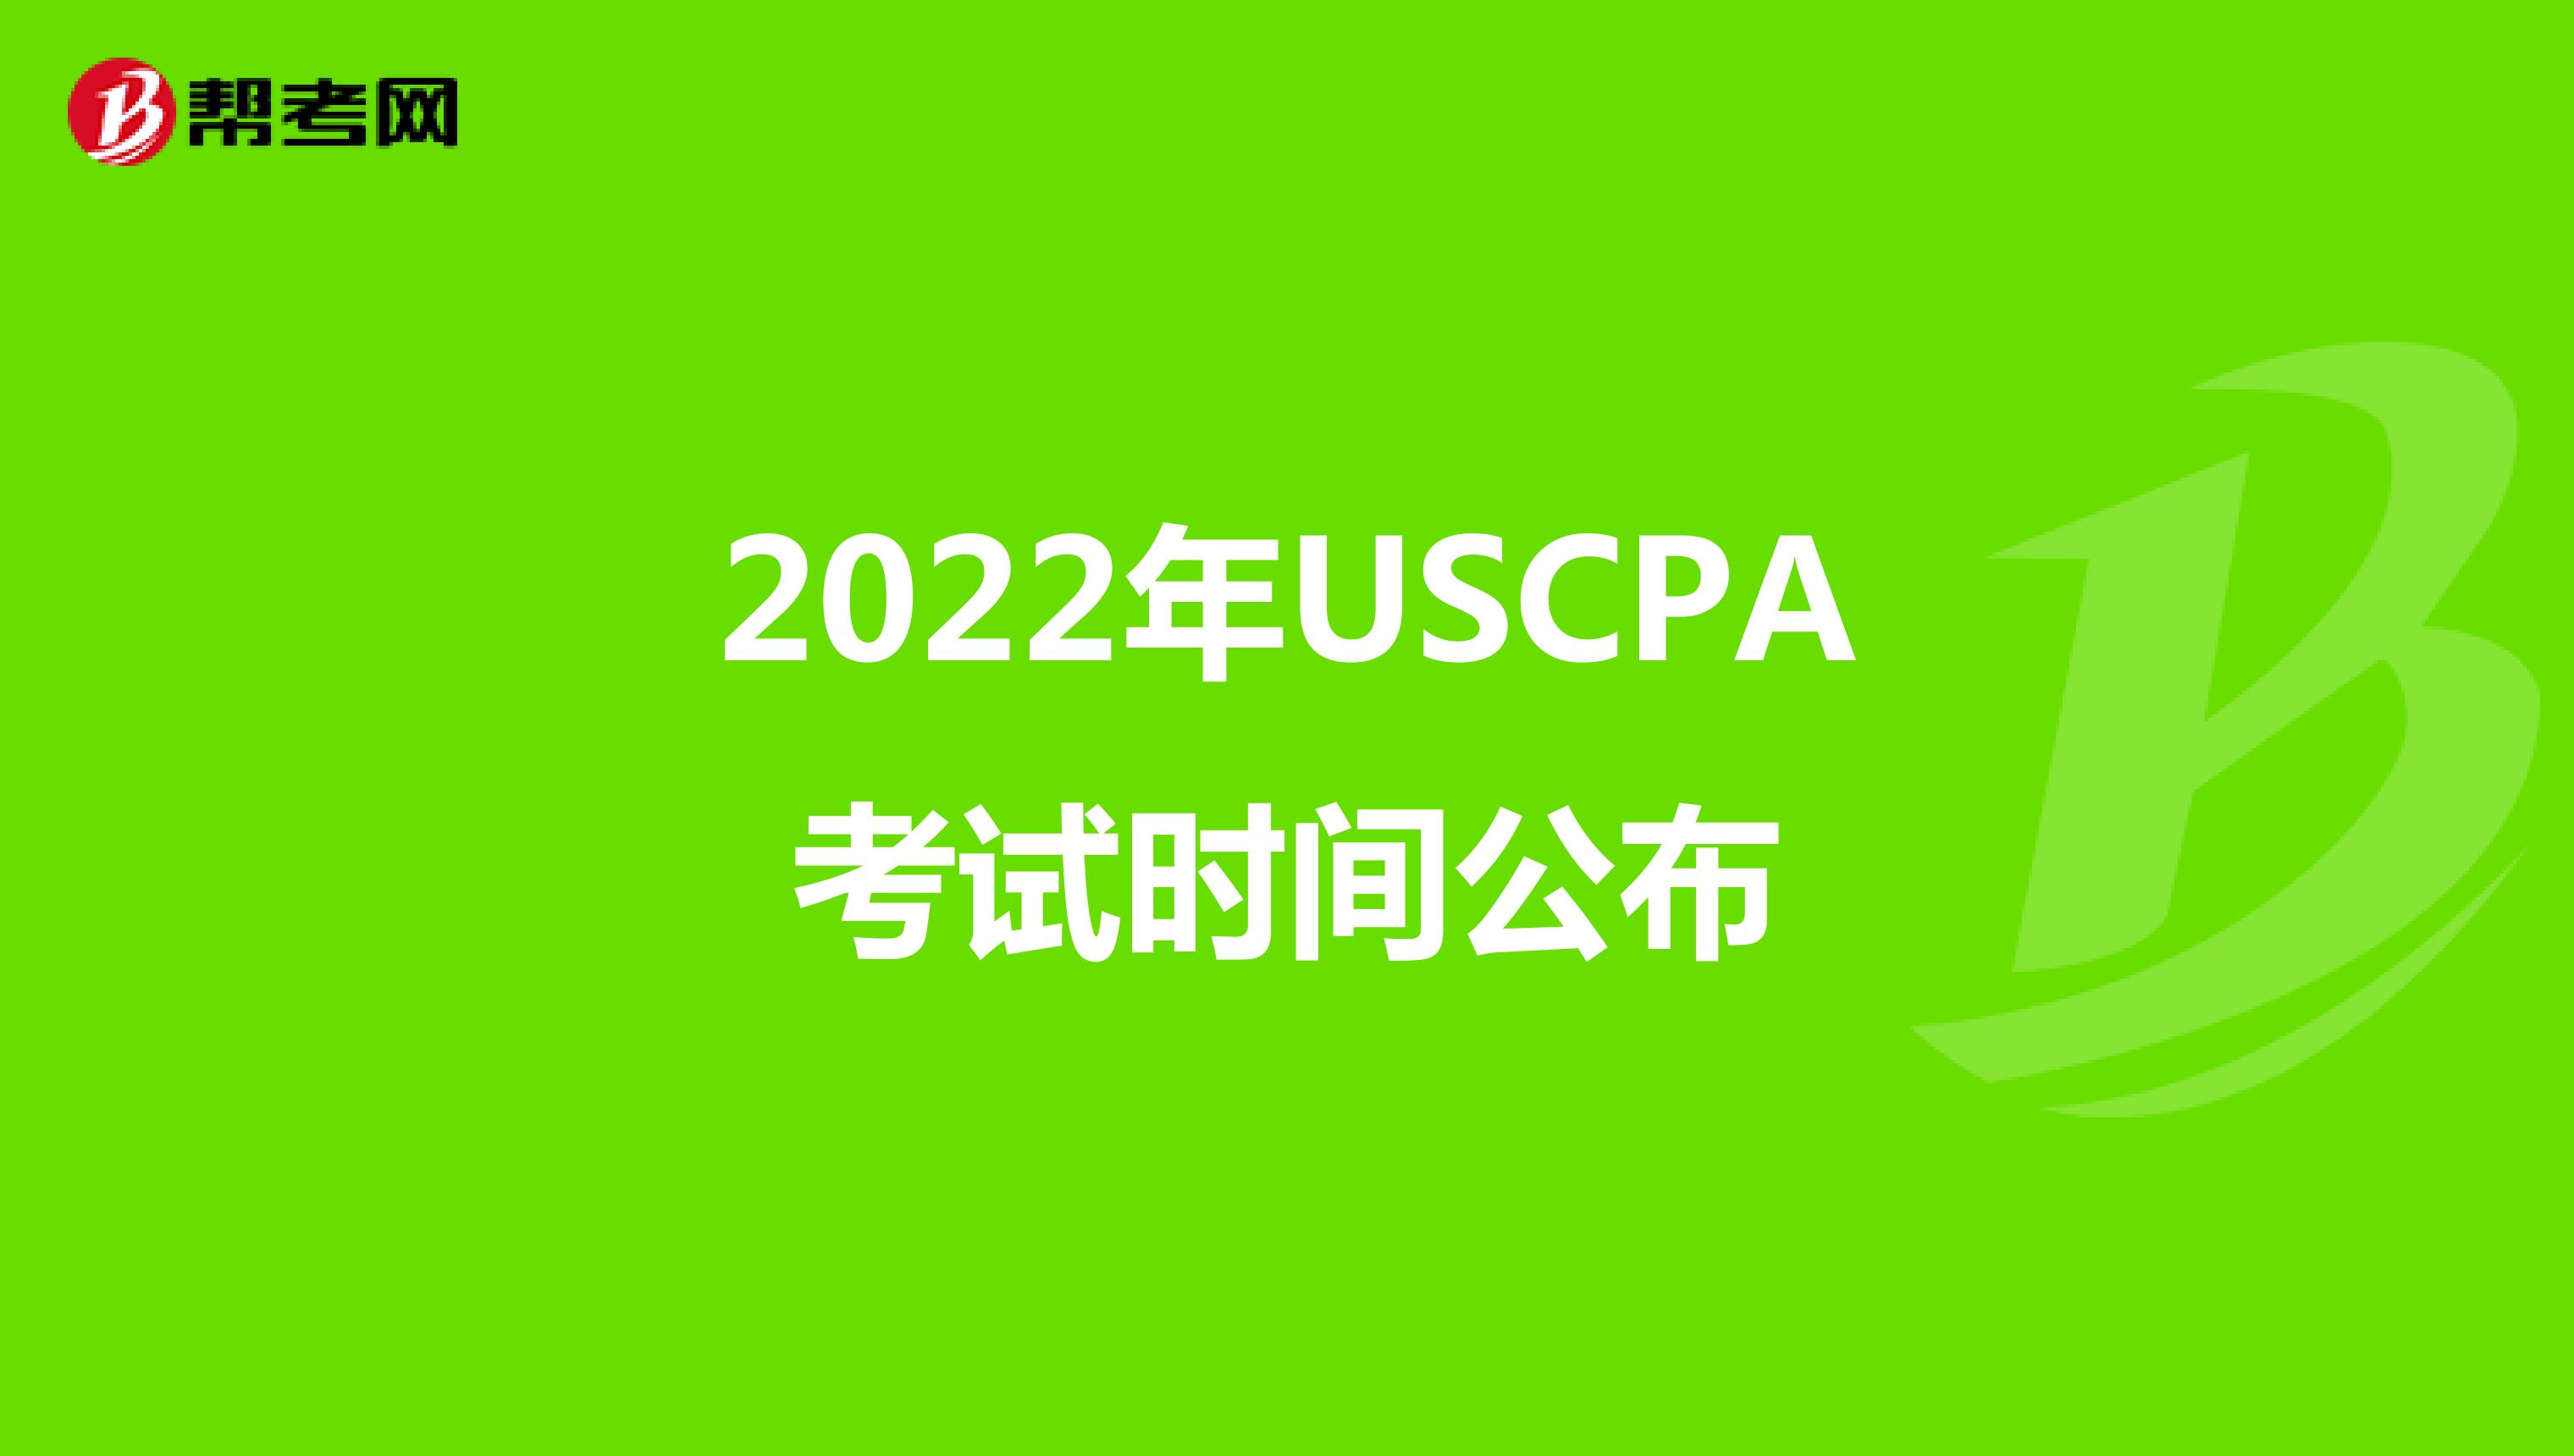 2022年USCPA考试时间公布